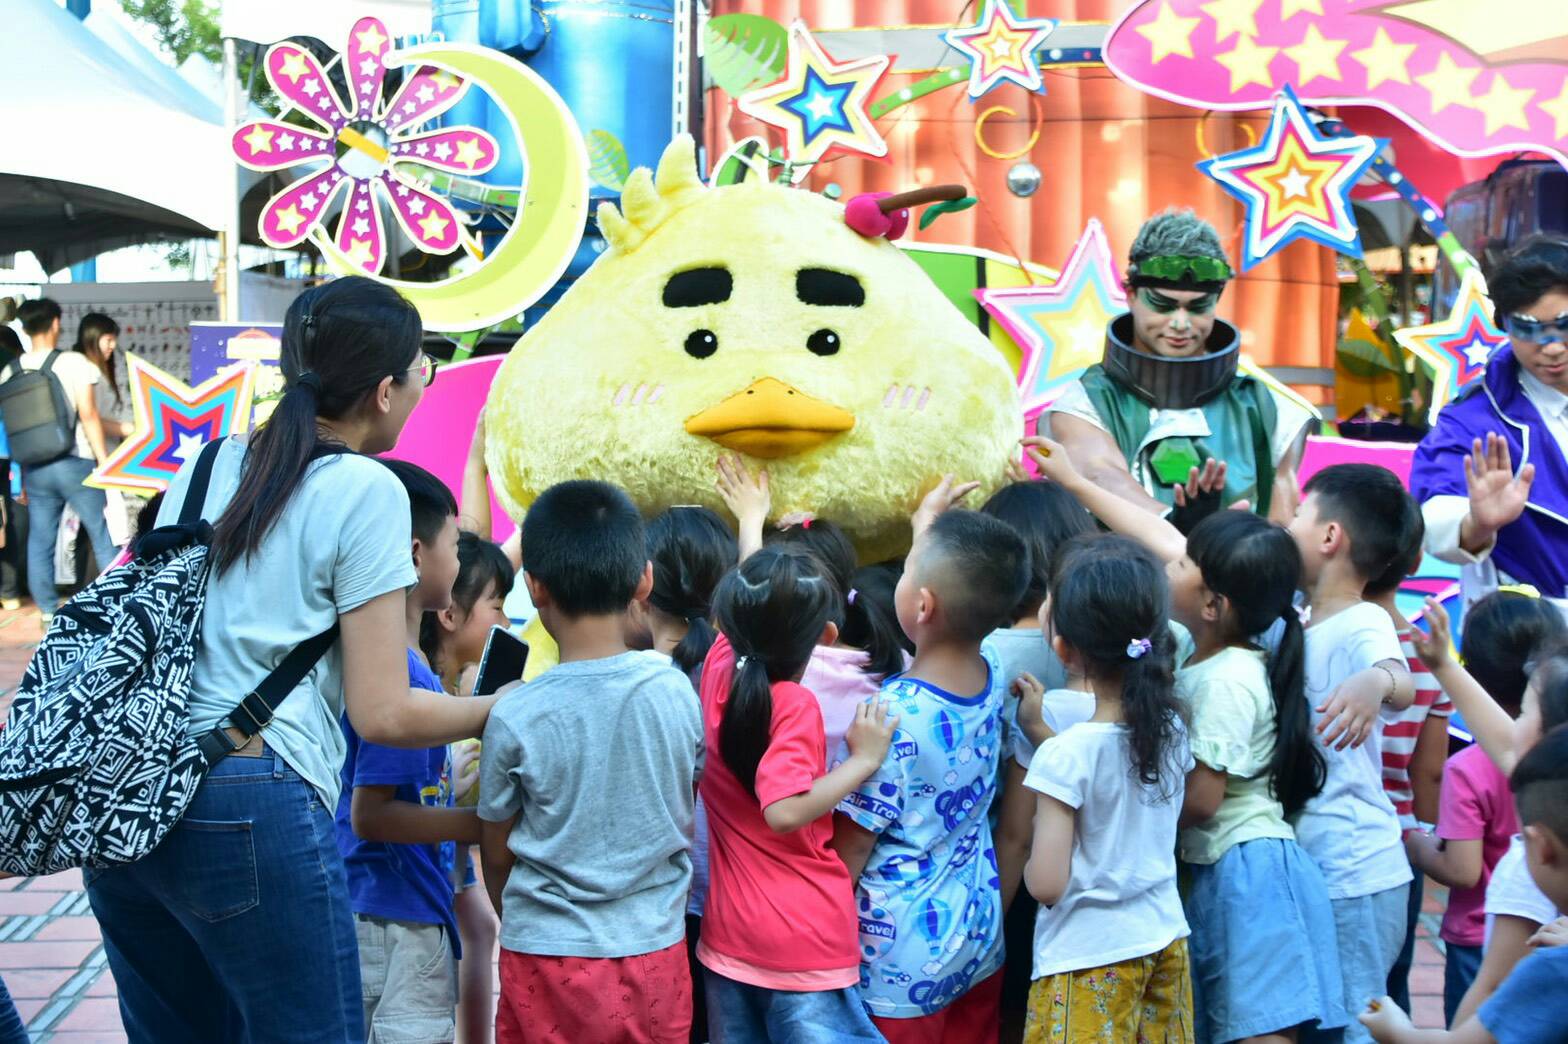 宜蘭特色吉祥物「宜比鴨」 現身童玩星光樂園成兒童最愛